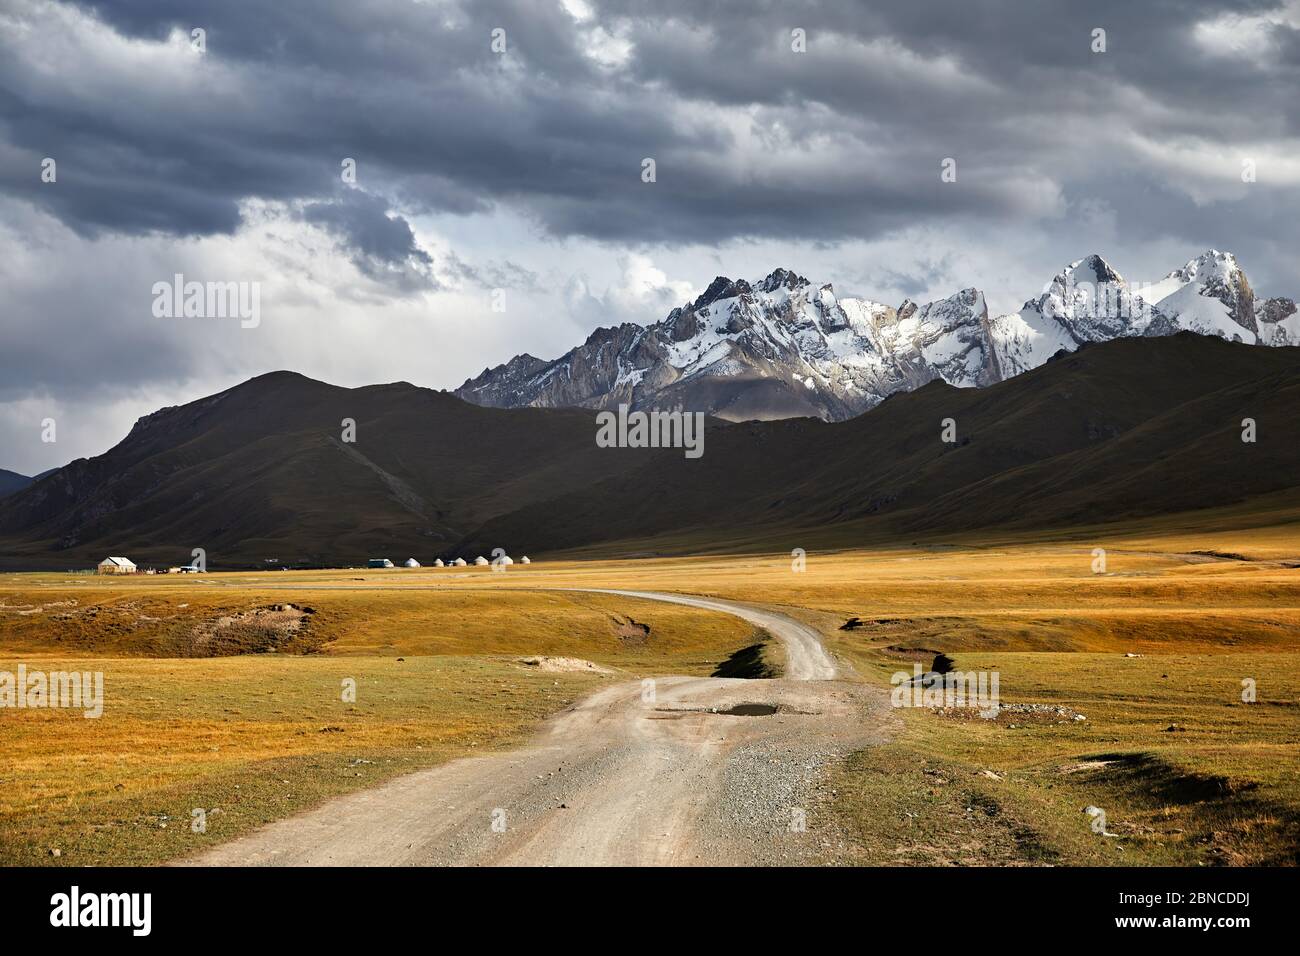 Beau paysage de montagnes de pics blancs, route et camp de yourte dans la vallée près du lac de Kel Suu dans la région de Naryn, au Kirghizstan Banque D'Images